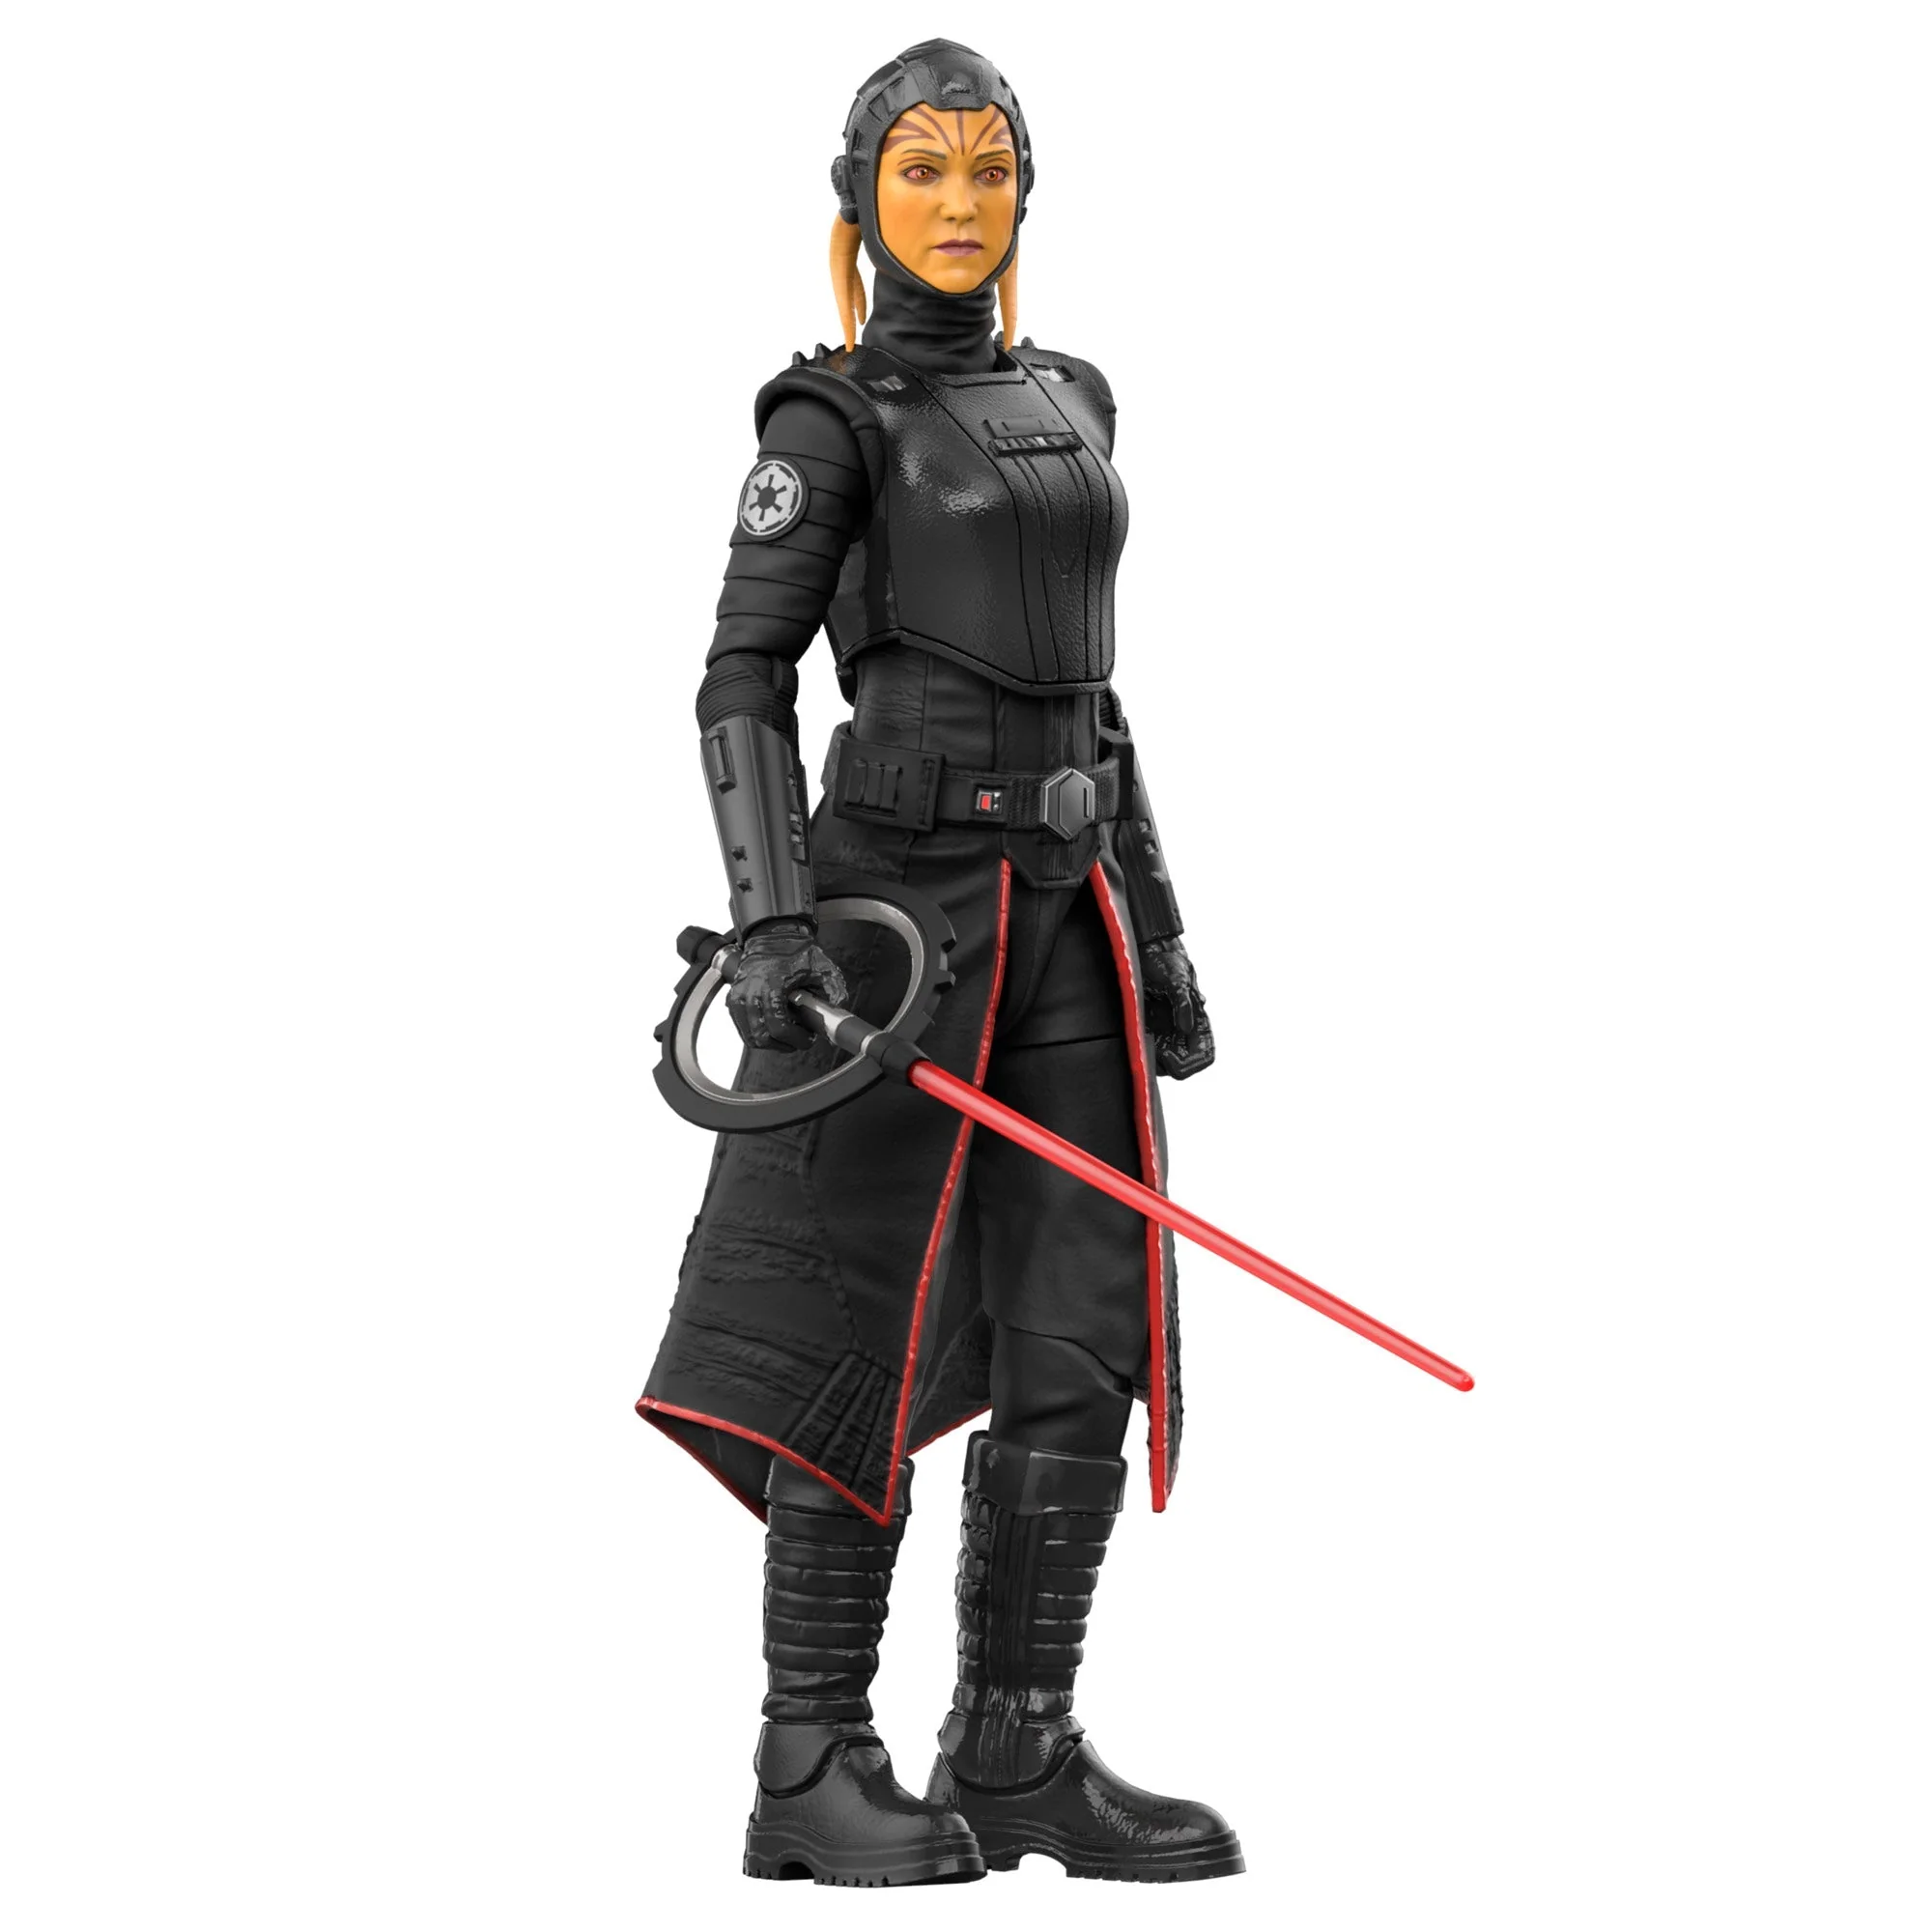 Inquisiteur-vierde-zus-figurine-Star-Wars-Obi-Wan-Kenobi-Zwart-Serie-Hasbro-15-cm-5010996124845-koninkrijk-figurine-6